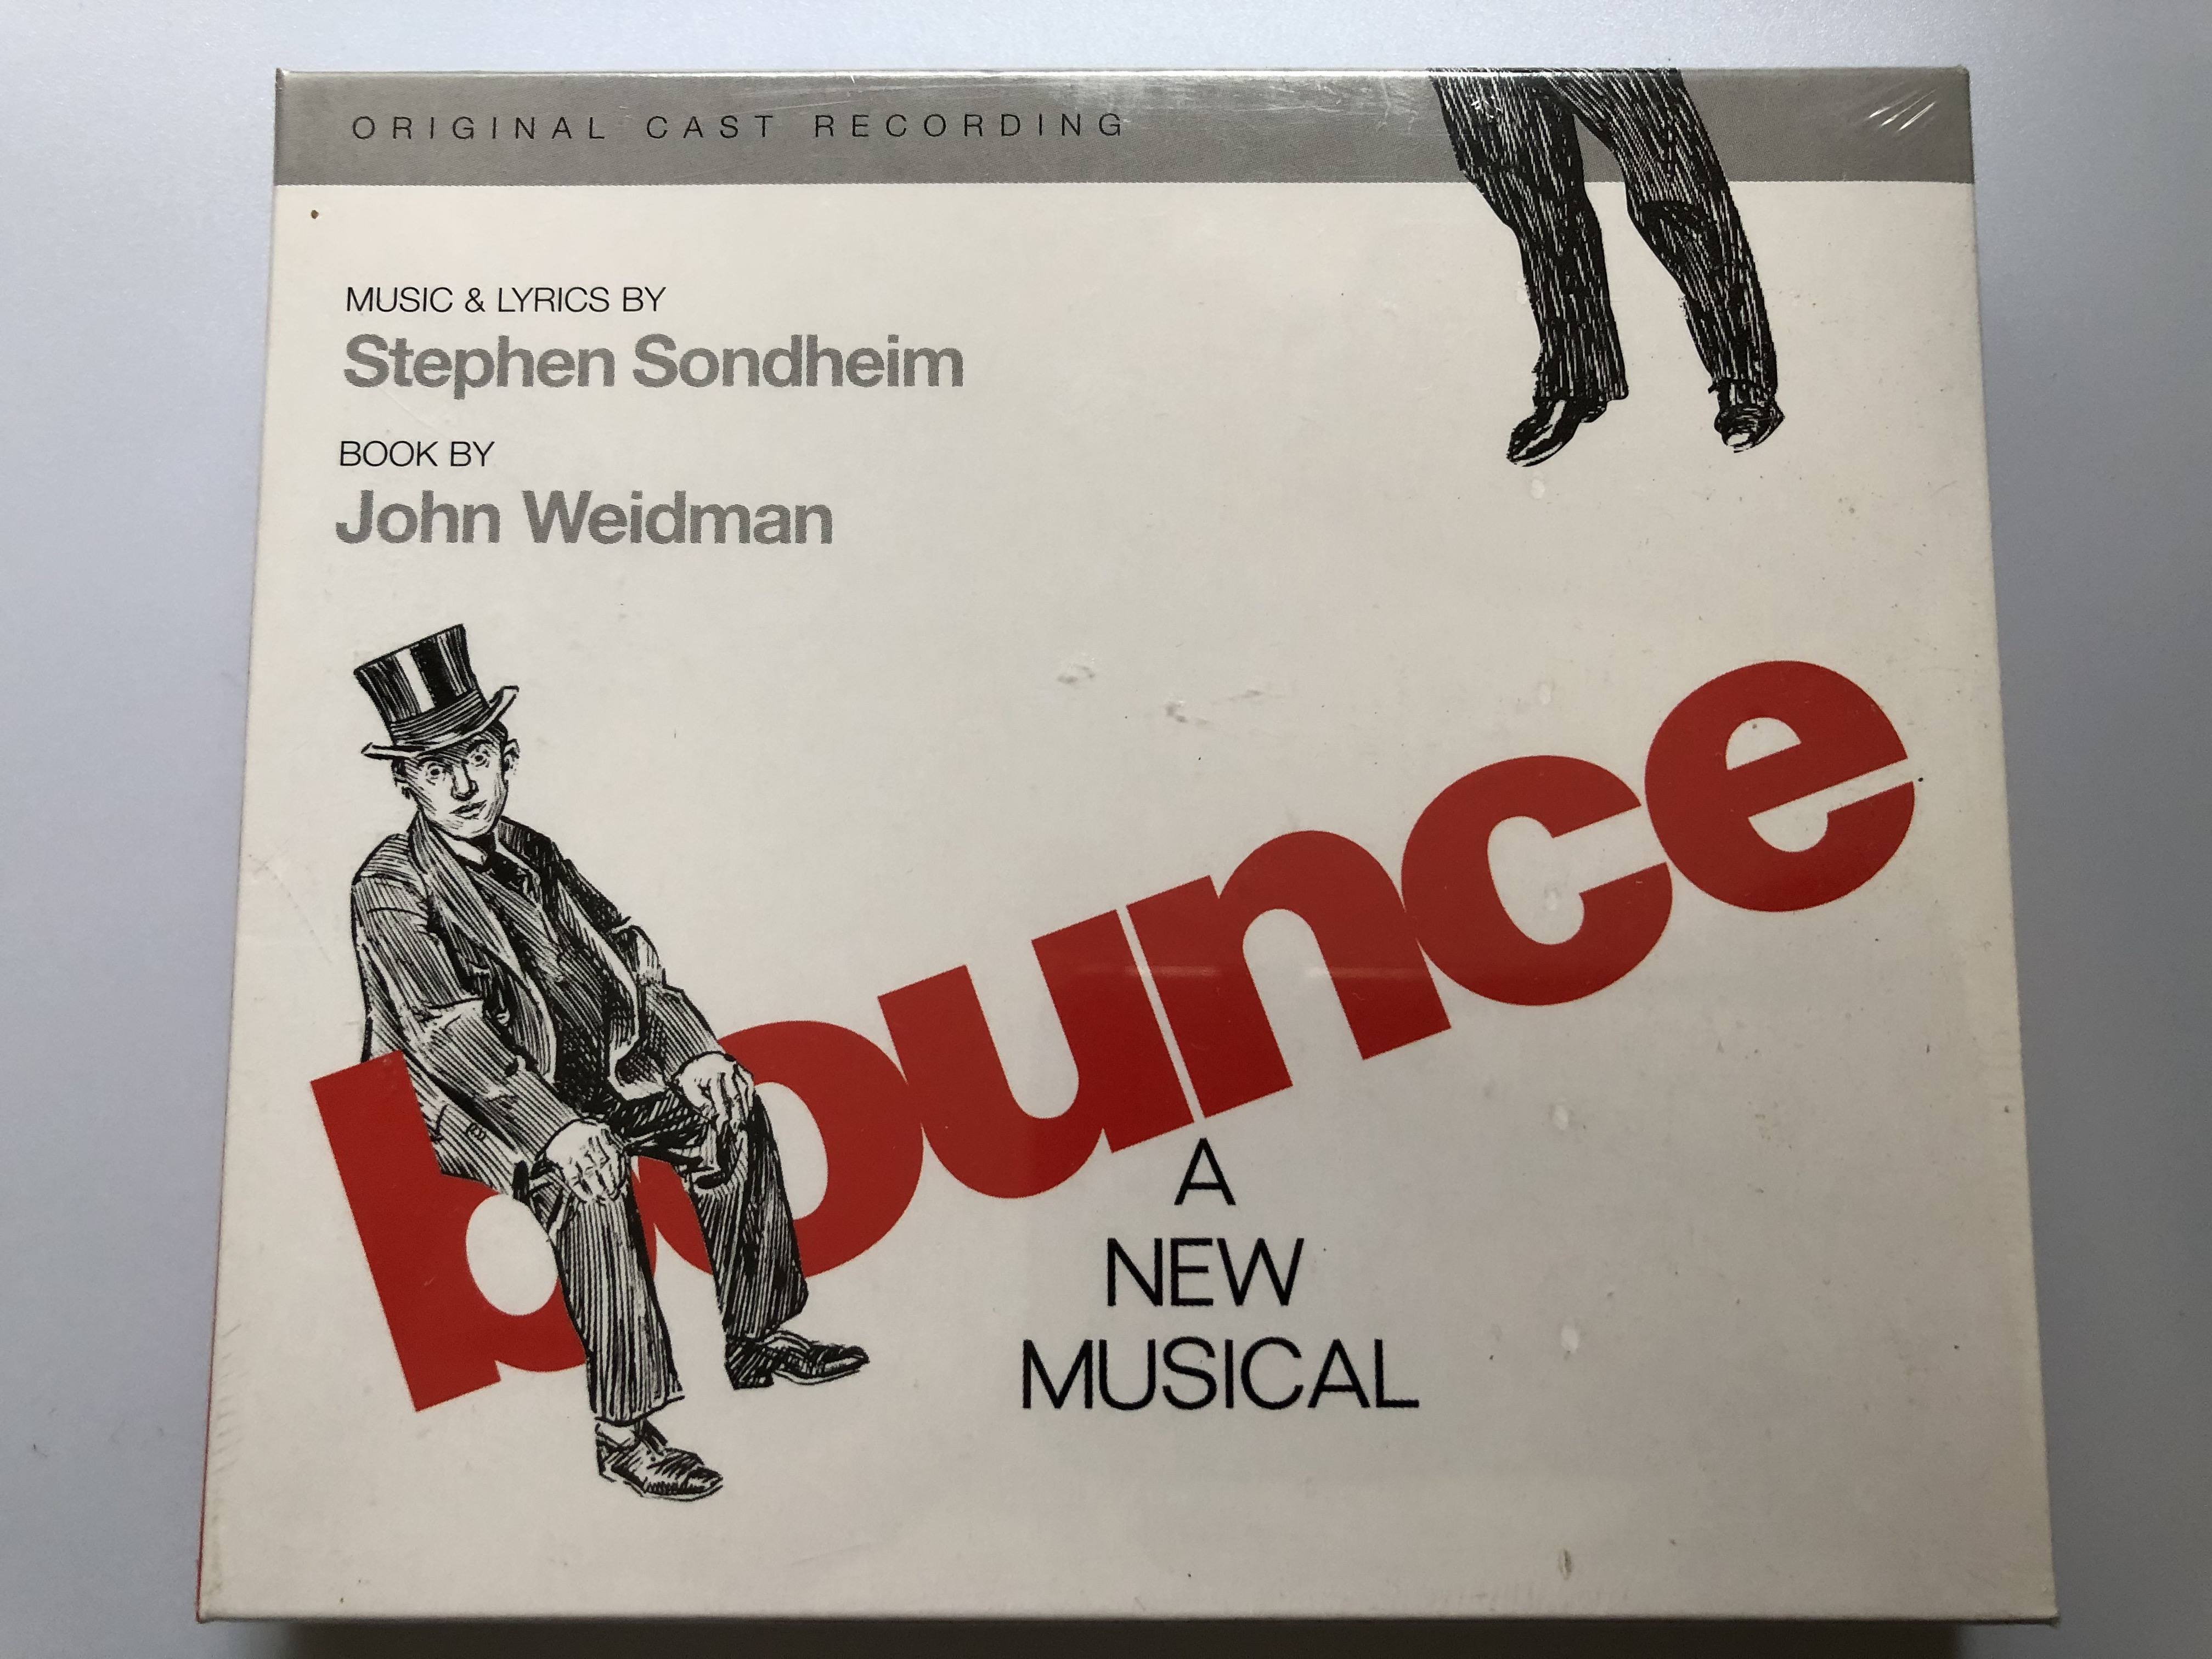 bounce-a-new-musical-original-cast-recording-music-lyrics-by-stephen-sondheim-book-by-john-weidman-nonesuch-audio-cd-2004-7559-79830-2-1-.jpg